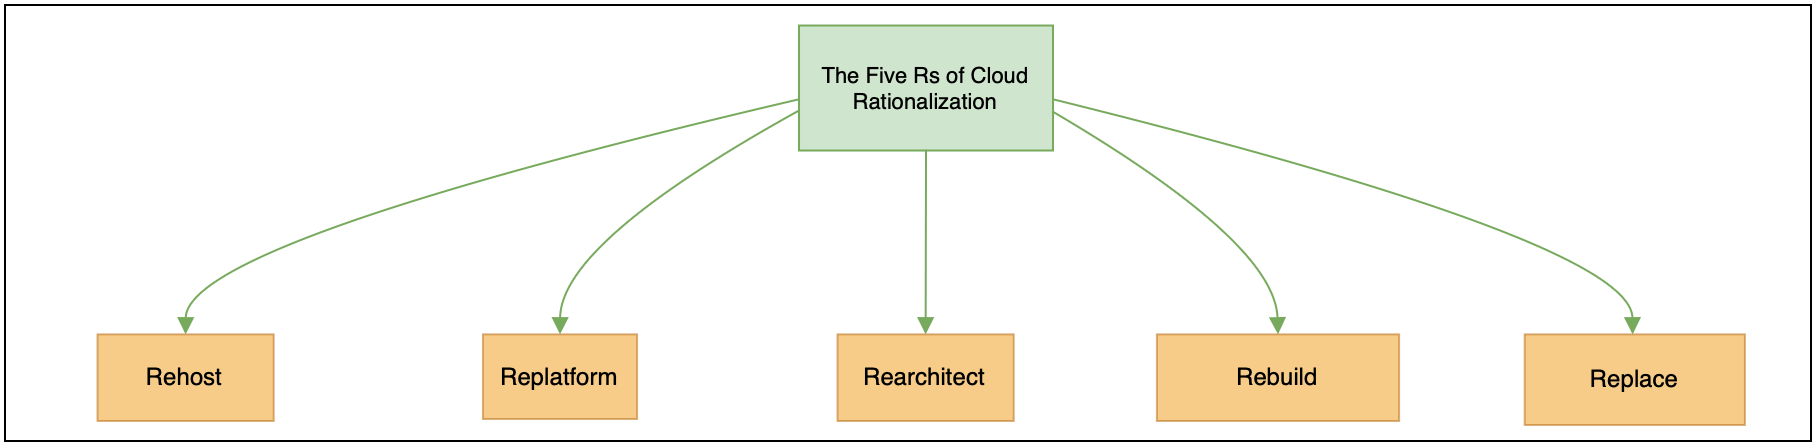 Cloud Adoption Process: